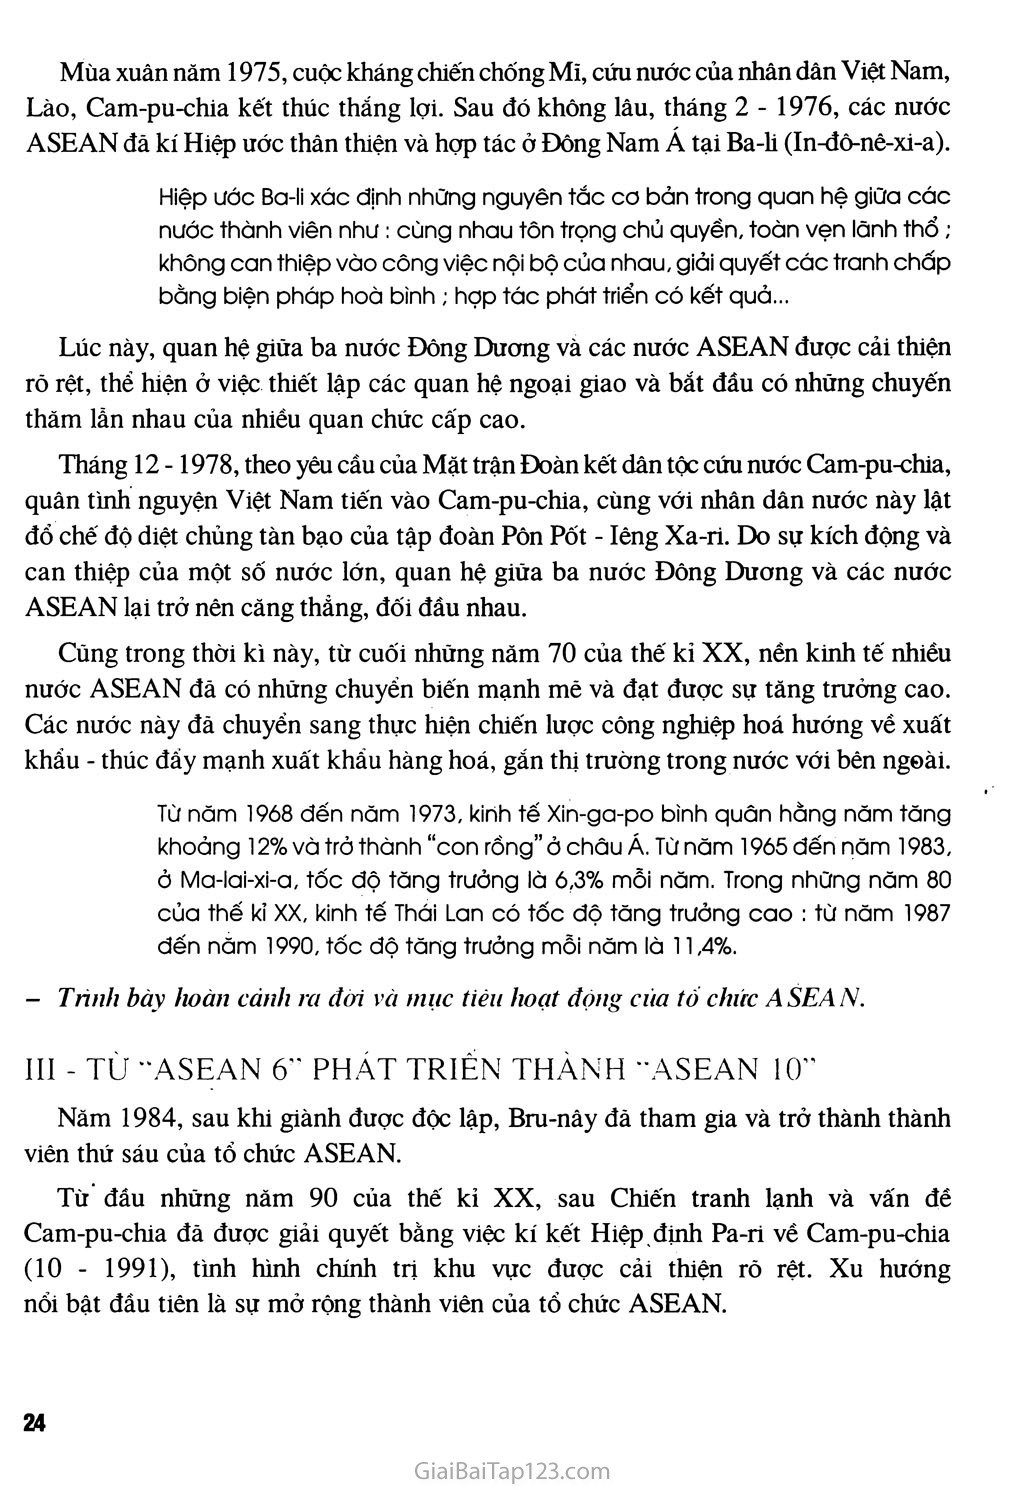 Bài 5 - Các nước Đông Nam Á trang 4